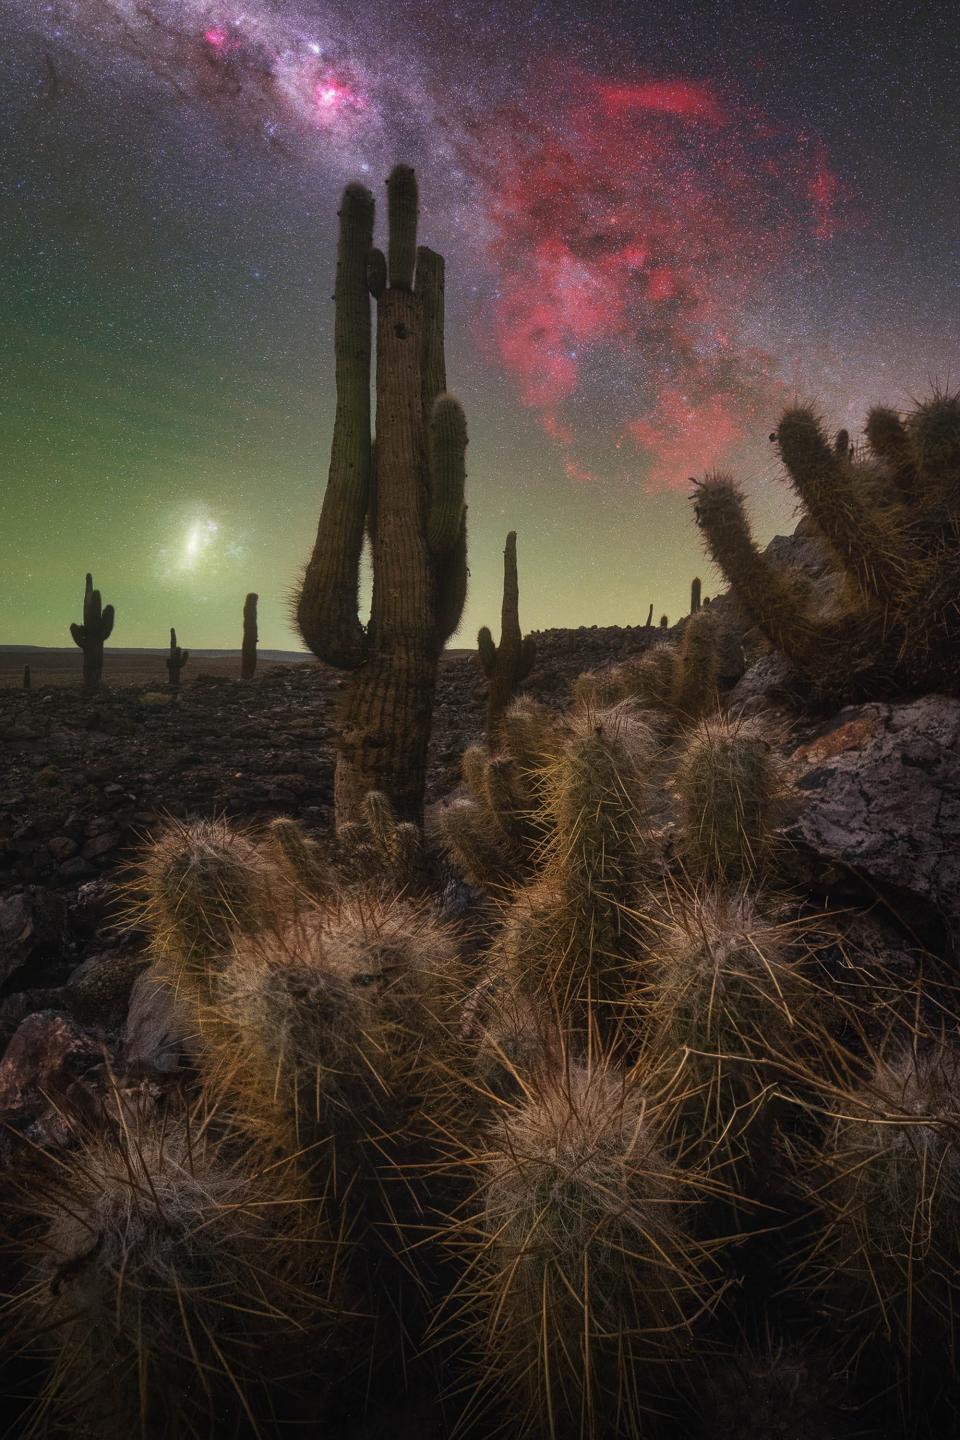 The Cactus Valley by Pablo Ruiz Gracía